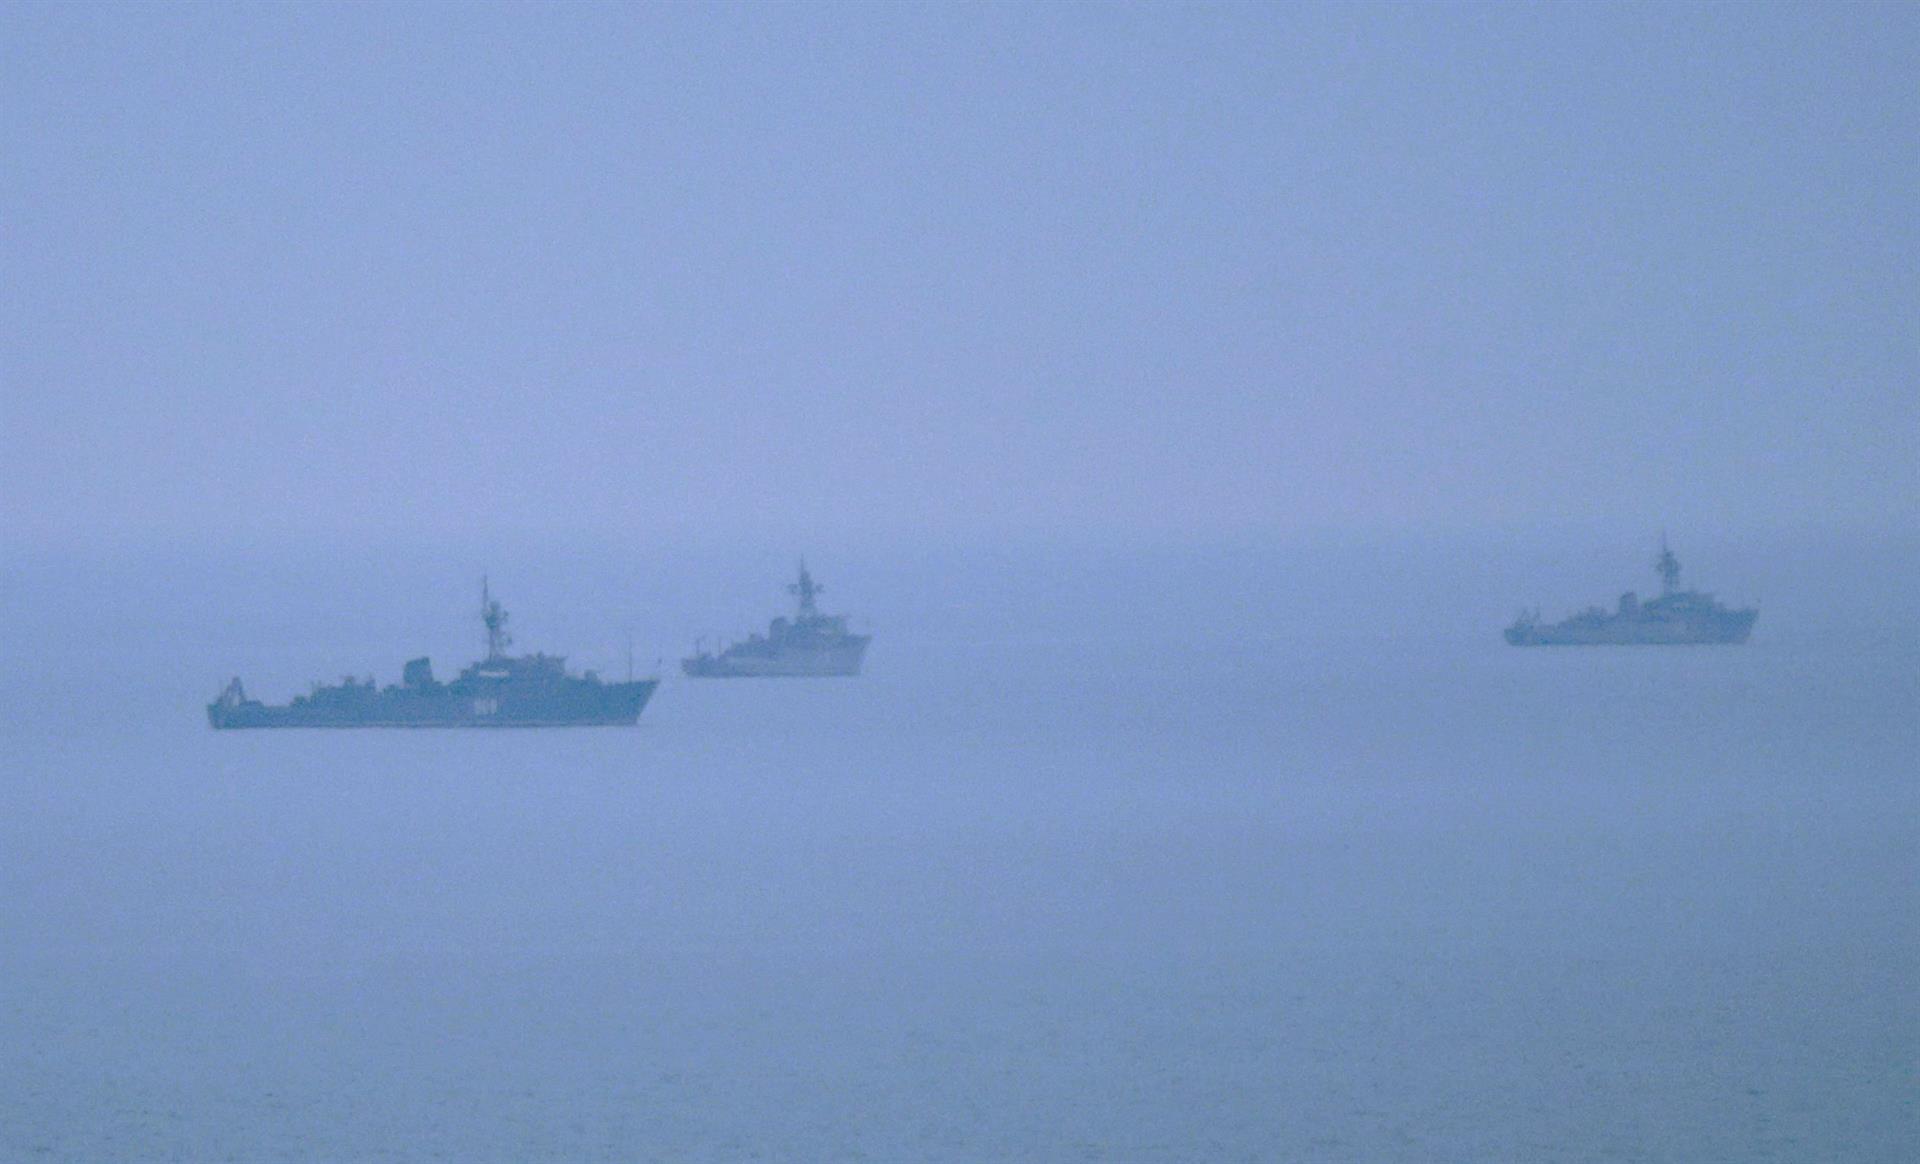 Misil ruso golpeó un barco japonés en costa ucraniana y dejó un herido